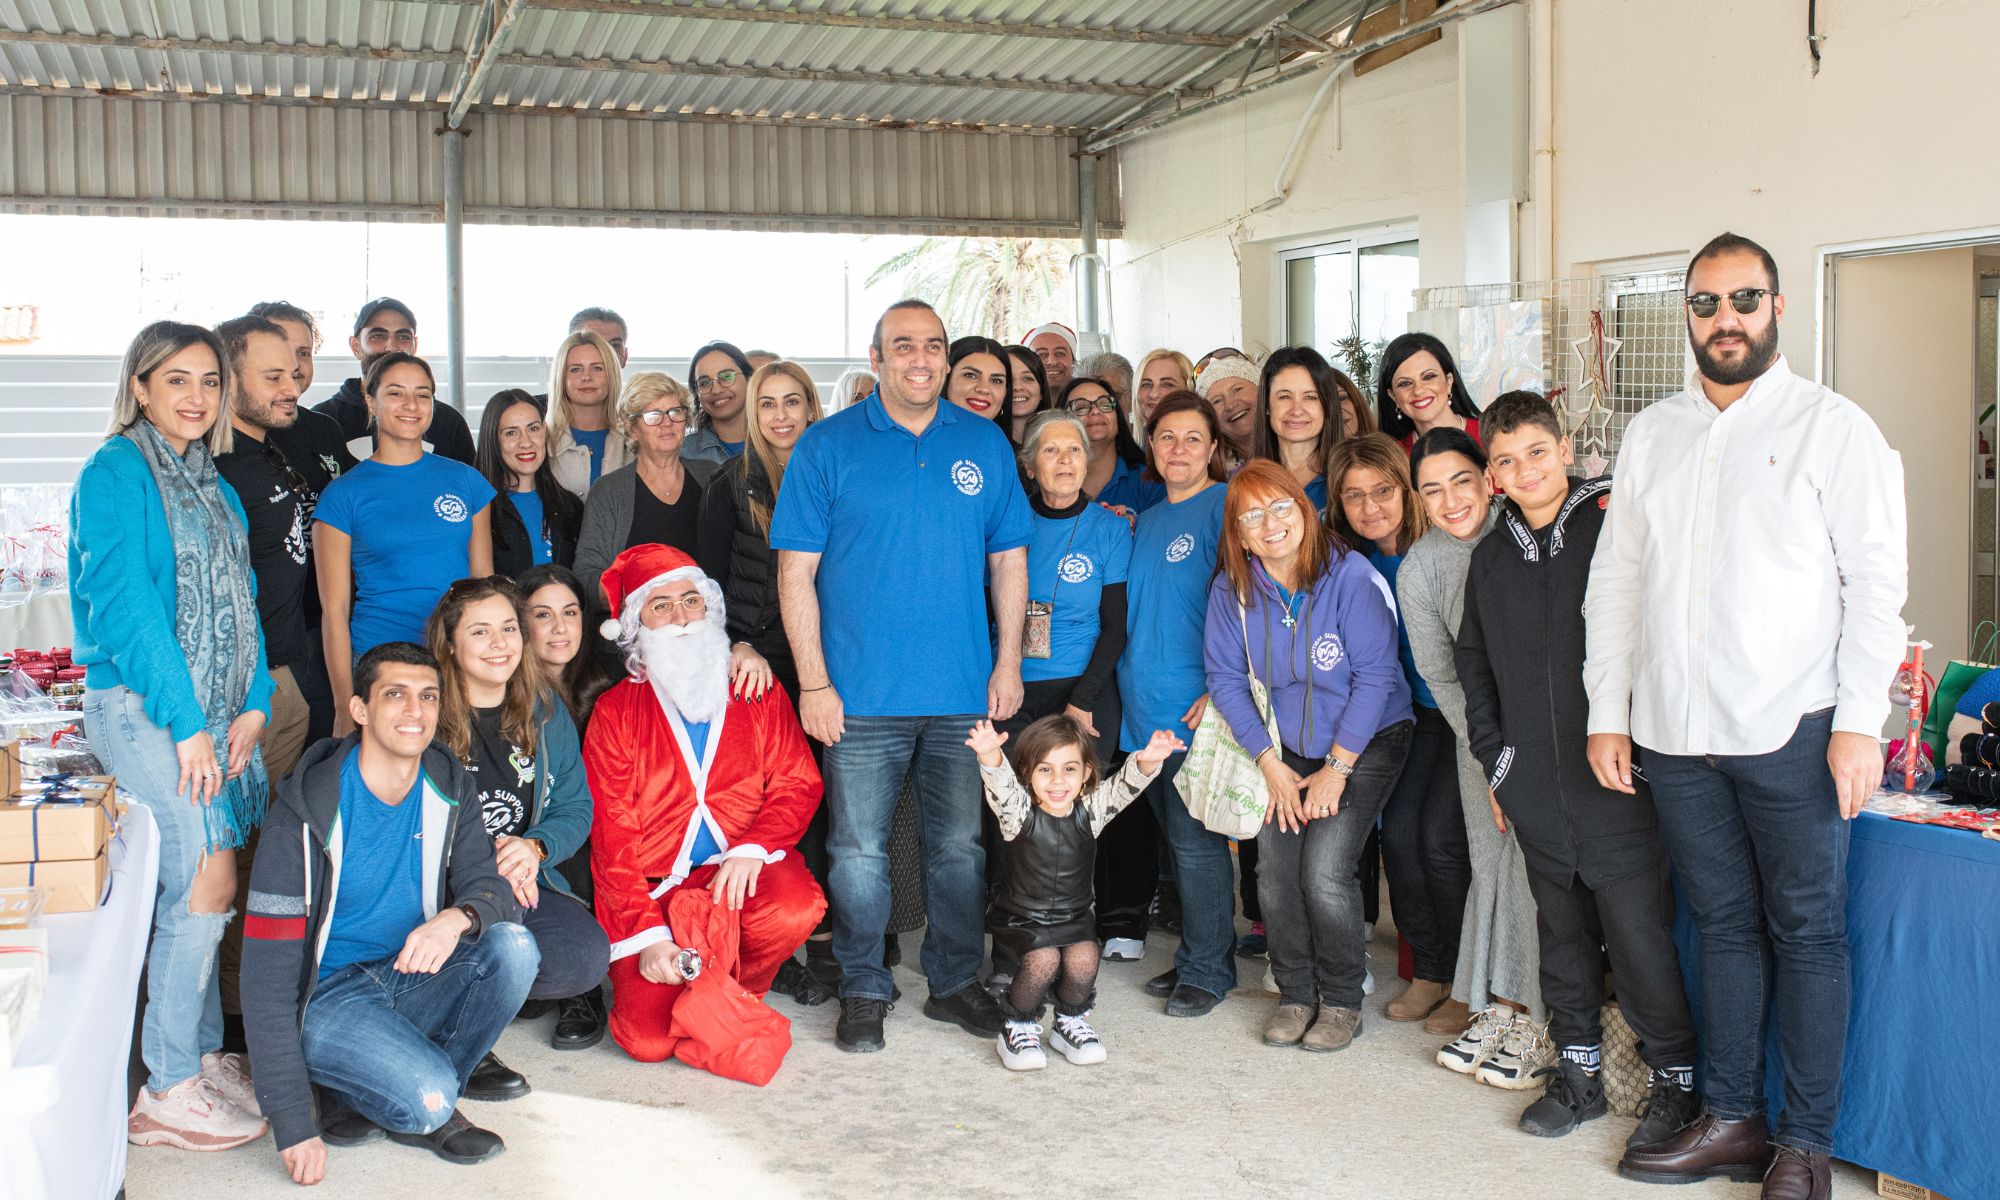 Autism Support Famagusta: Ολοκληρώθηκε το Χριστουγεννίατικο παζαράκι του σωματείου (ΕΙΚΟΝΕΣ)